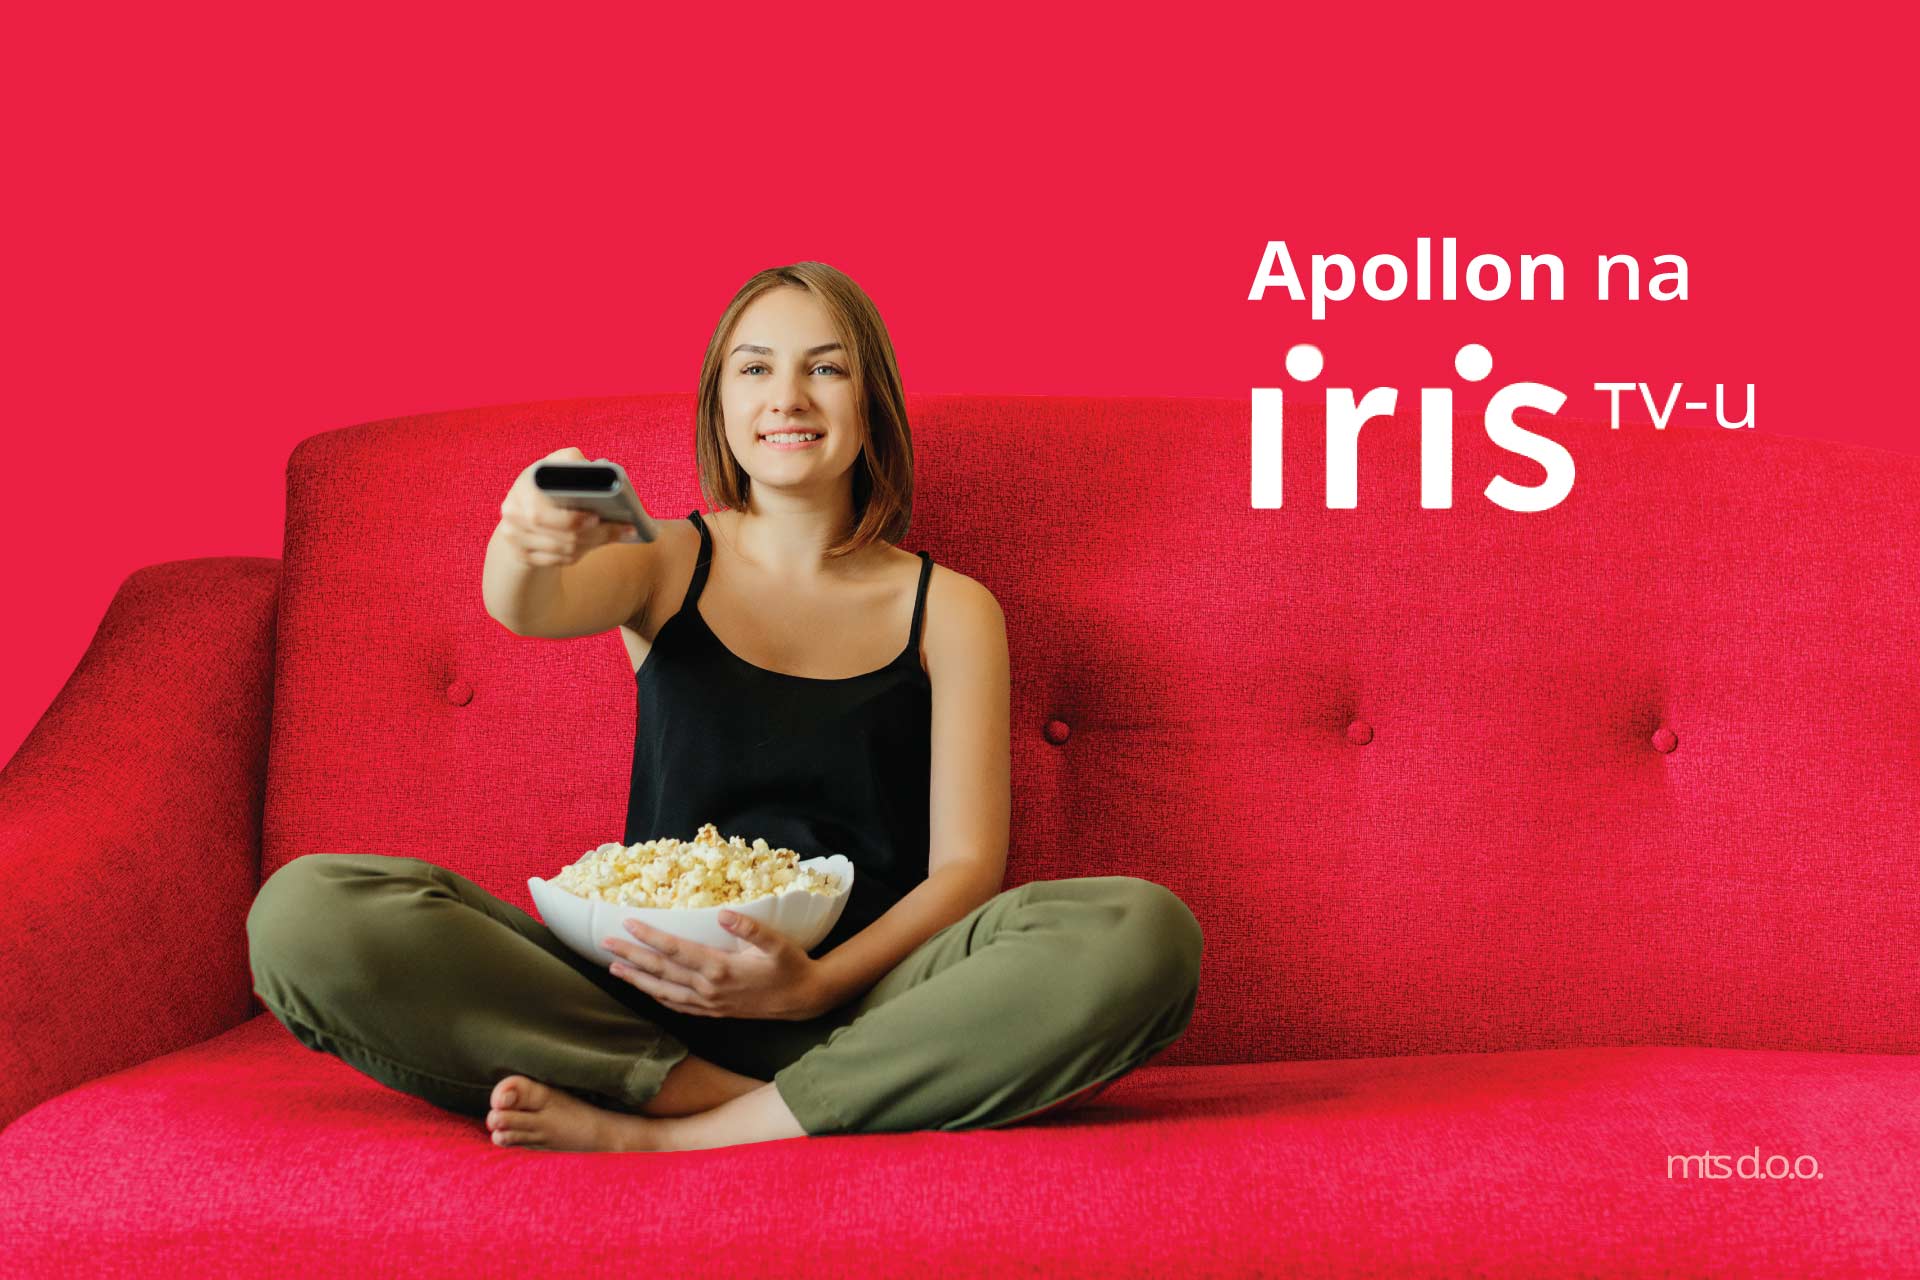 apollon - iris tv - devojka sedi na kaucu drzi daljinski i kokice - alternativa za netflix